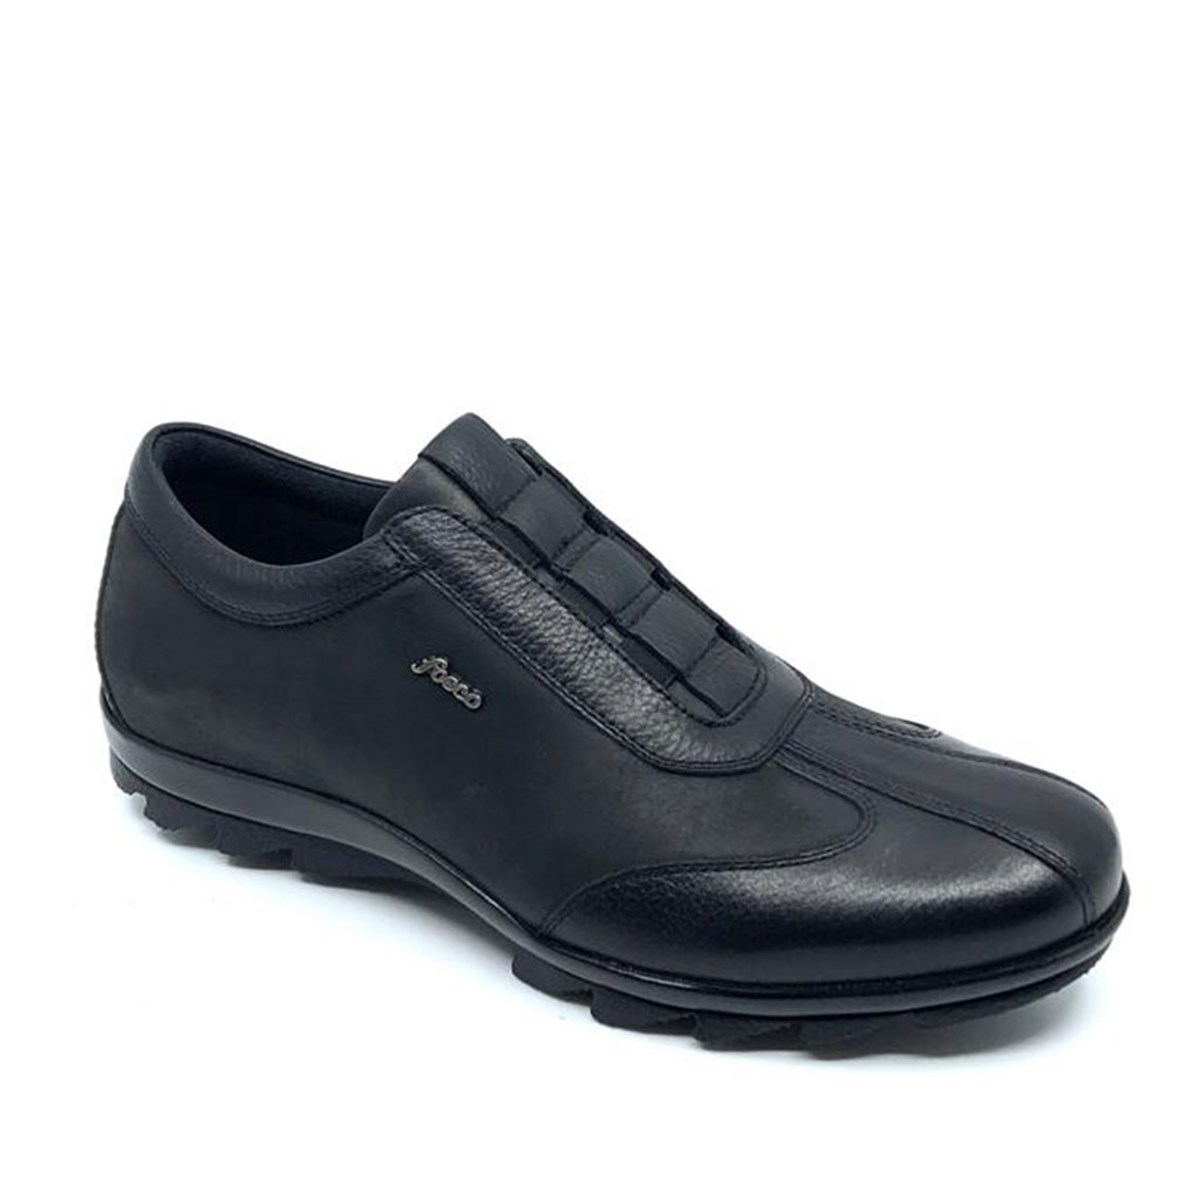 Erkek Siyah Bağcıksız Sıcak Astar Kışlık Günlük Ayakkabı, Renk: Siyah, Beden: 40